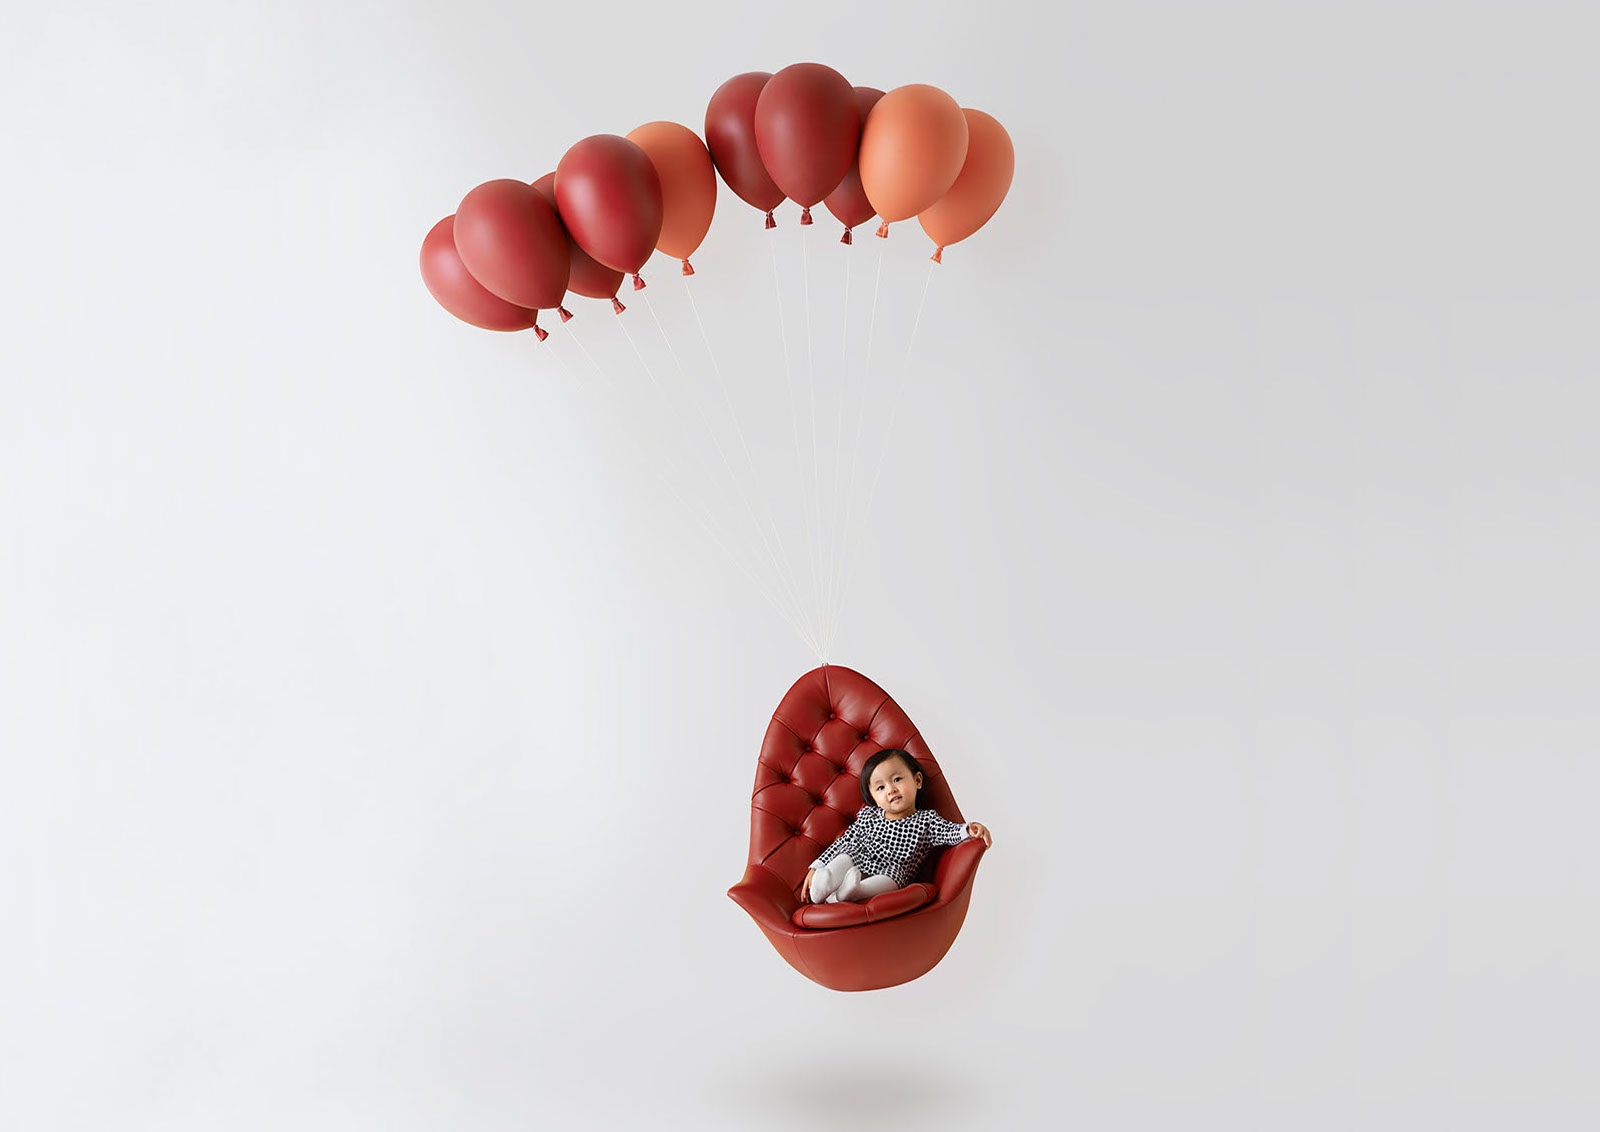 Balloon Chair